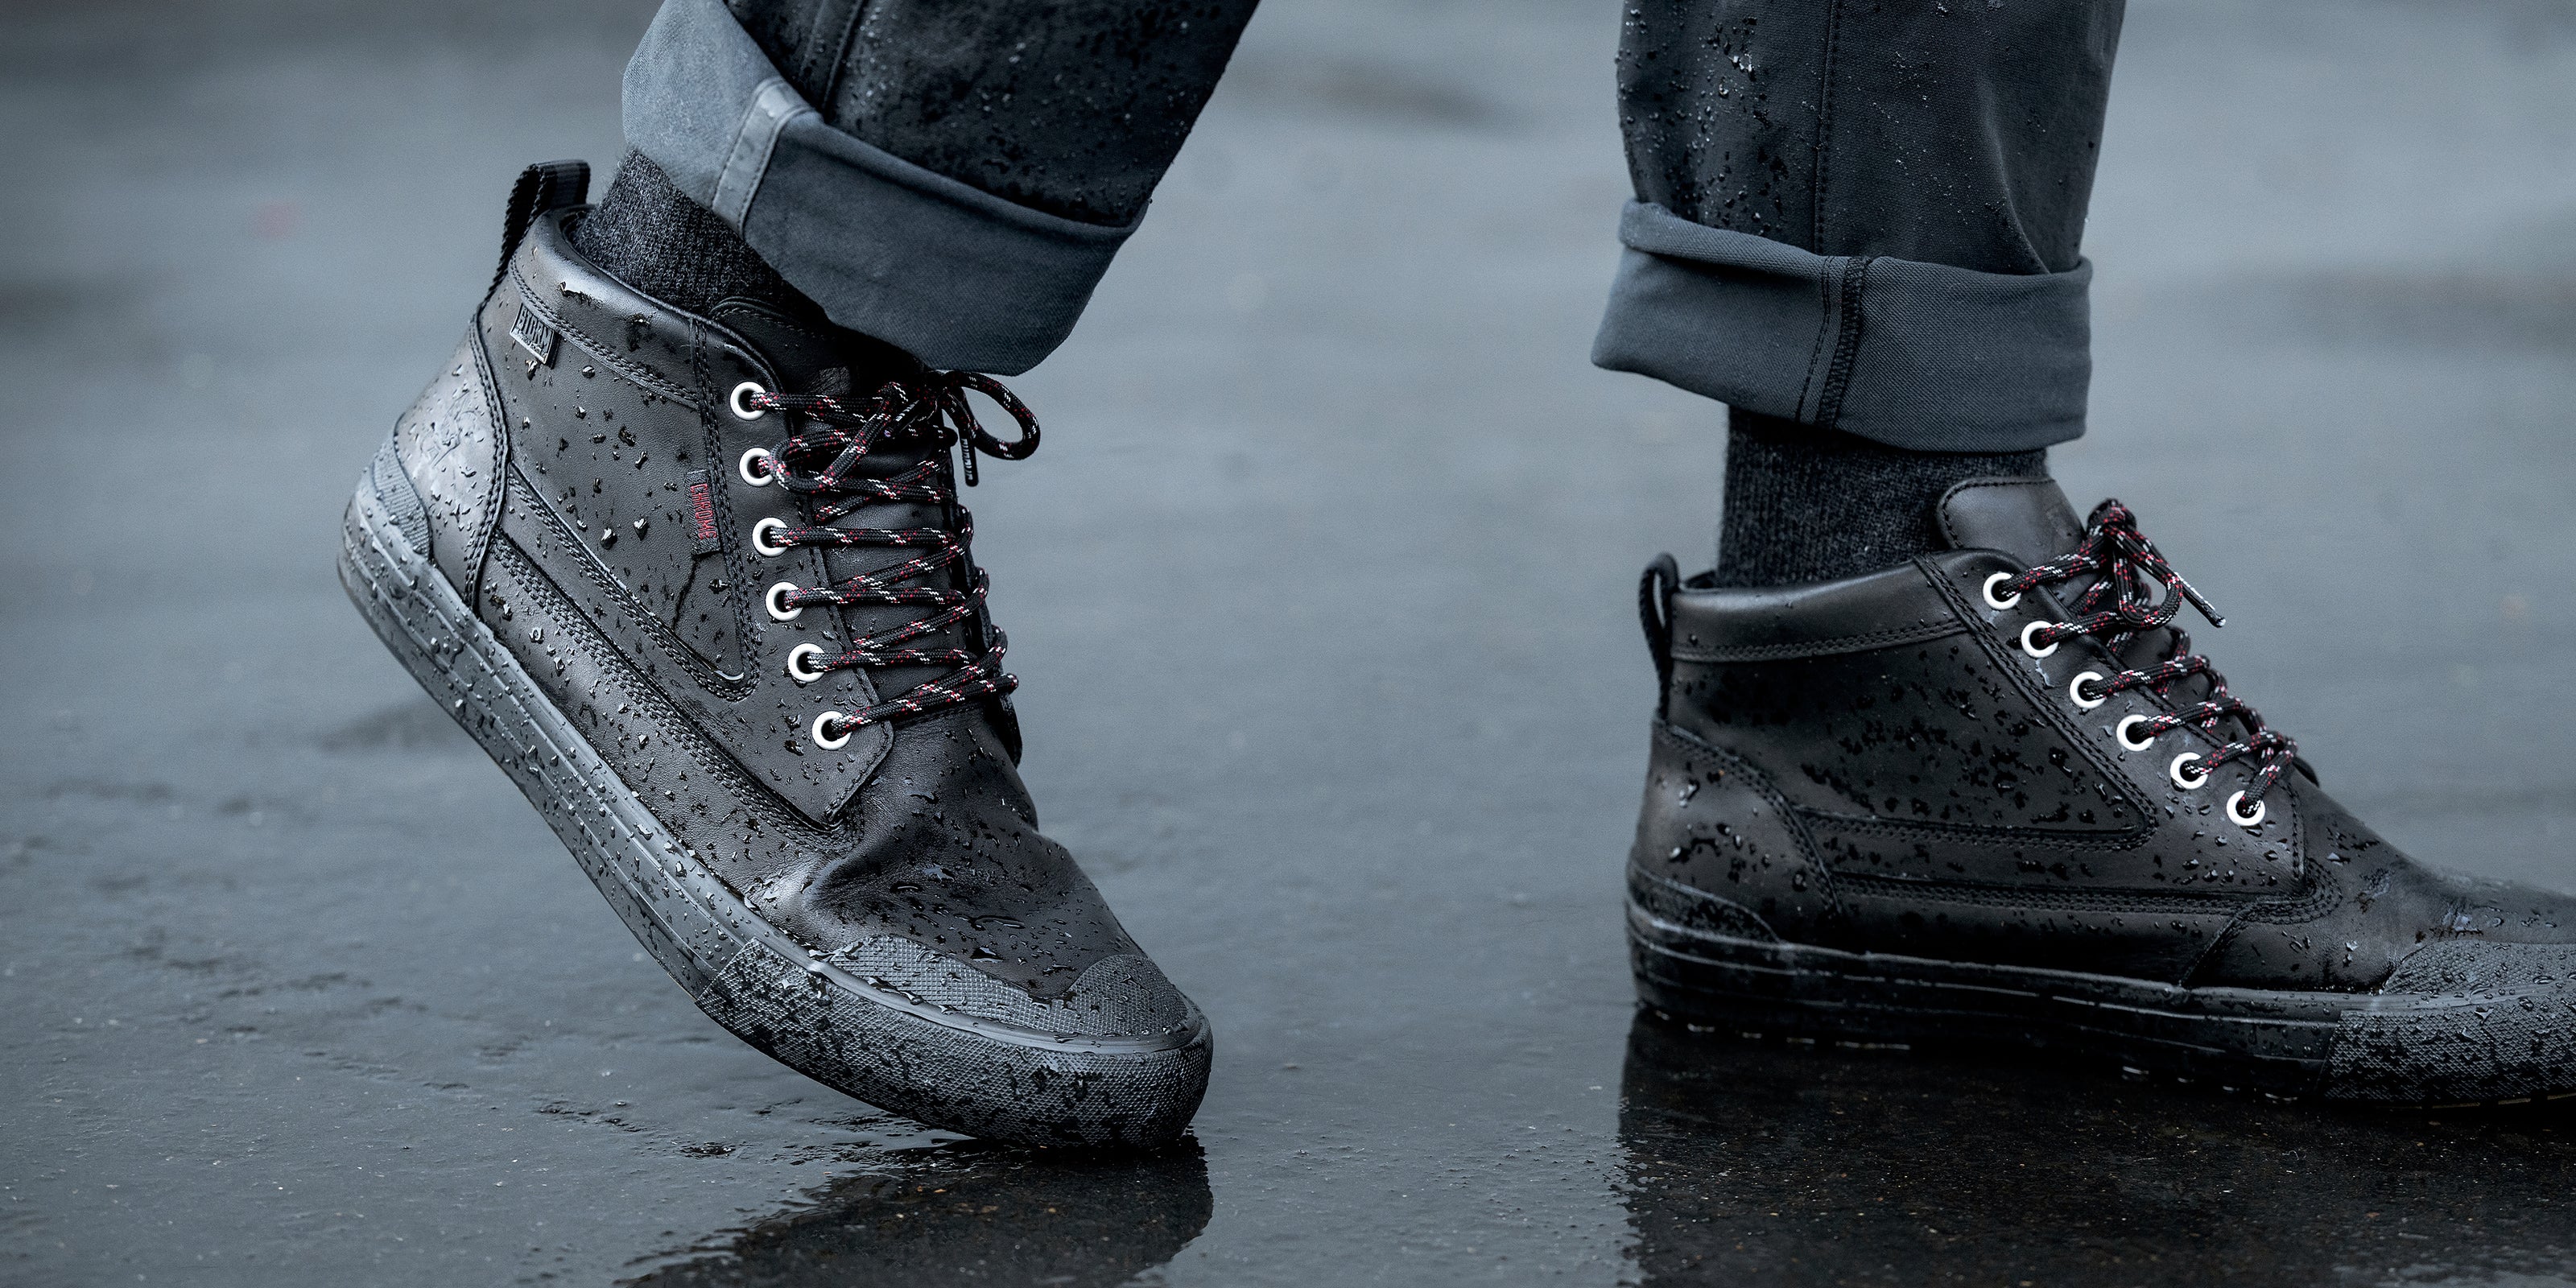 Storm 415 Waterproof boot shown on a guy walking desktop image size